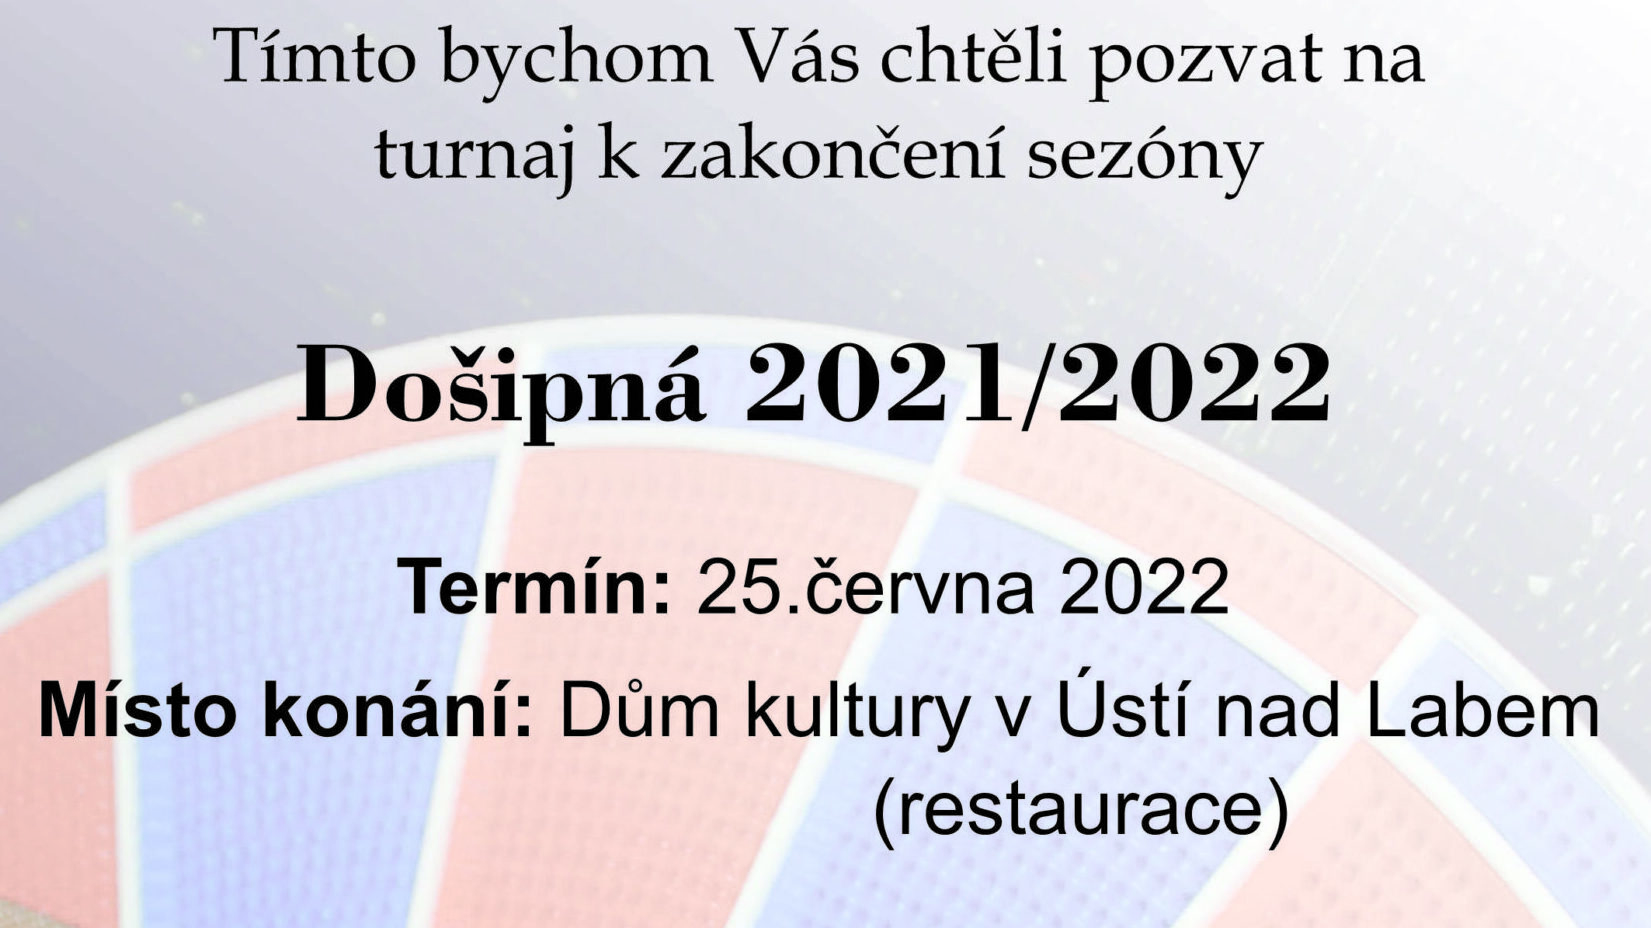 Došipná UŠL sezóna 2021/2022